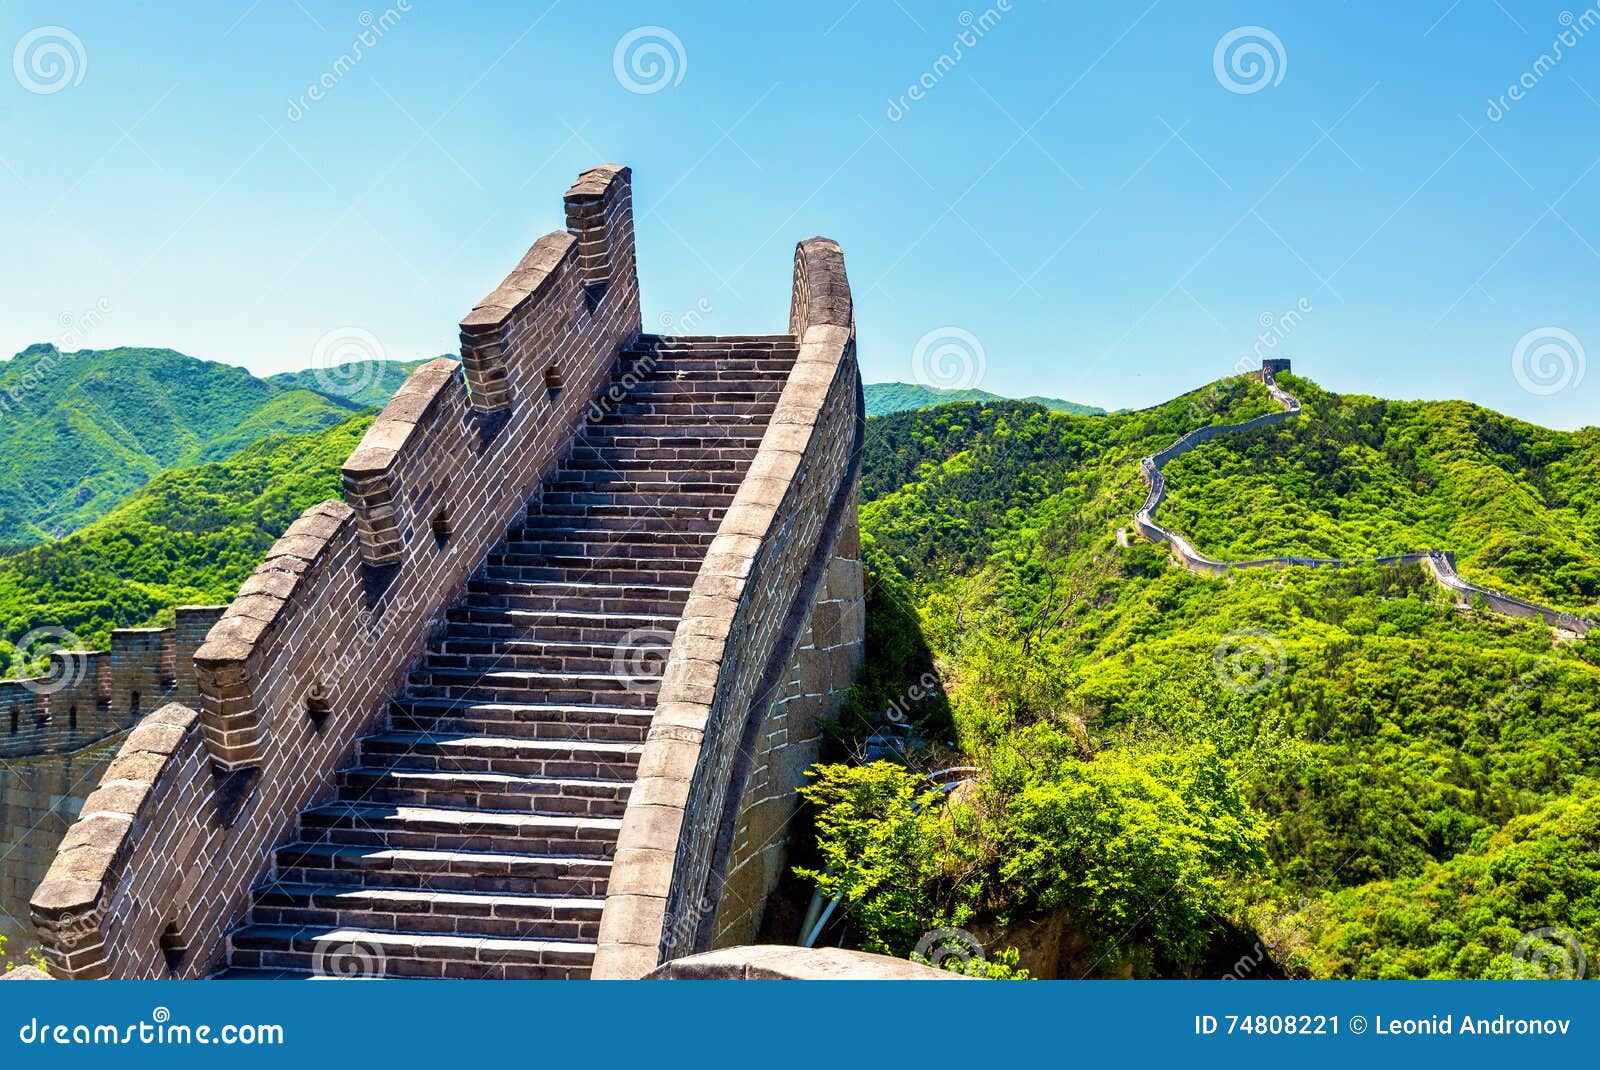 view of the great wall at badaling - china